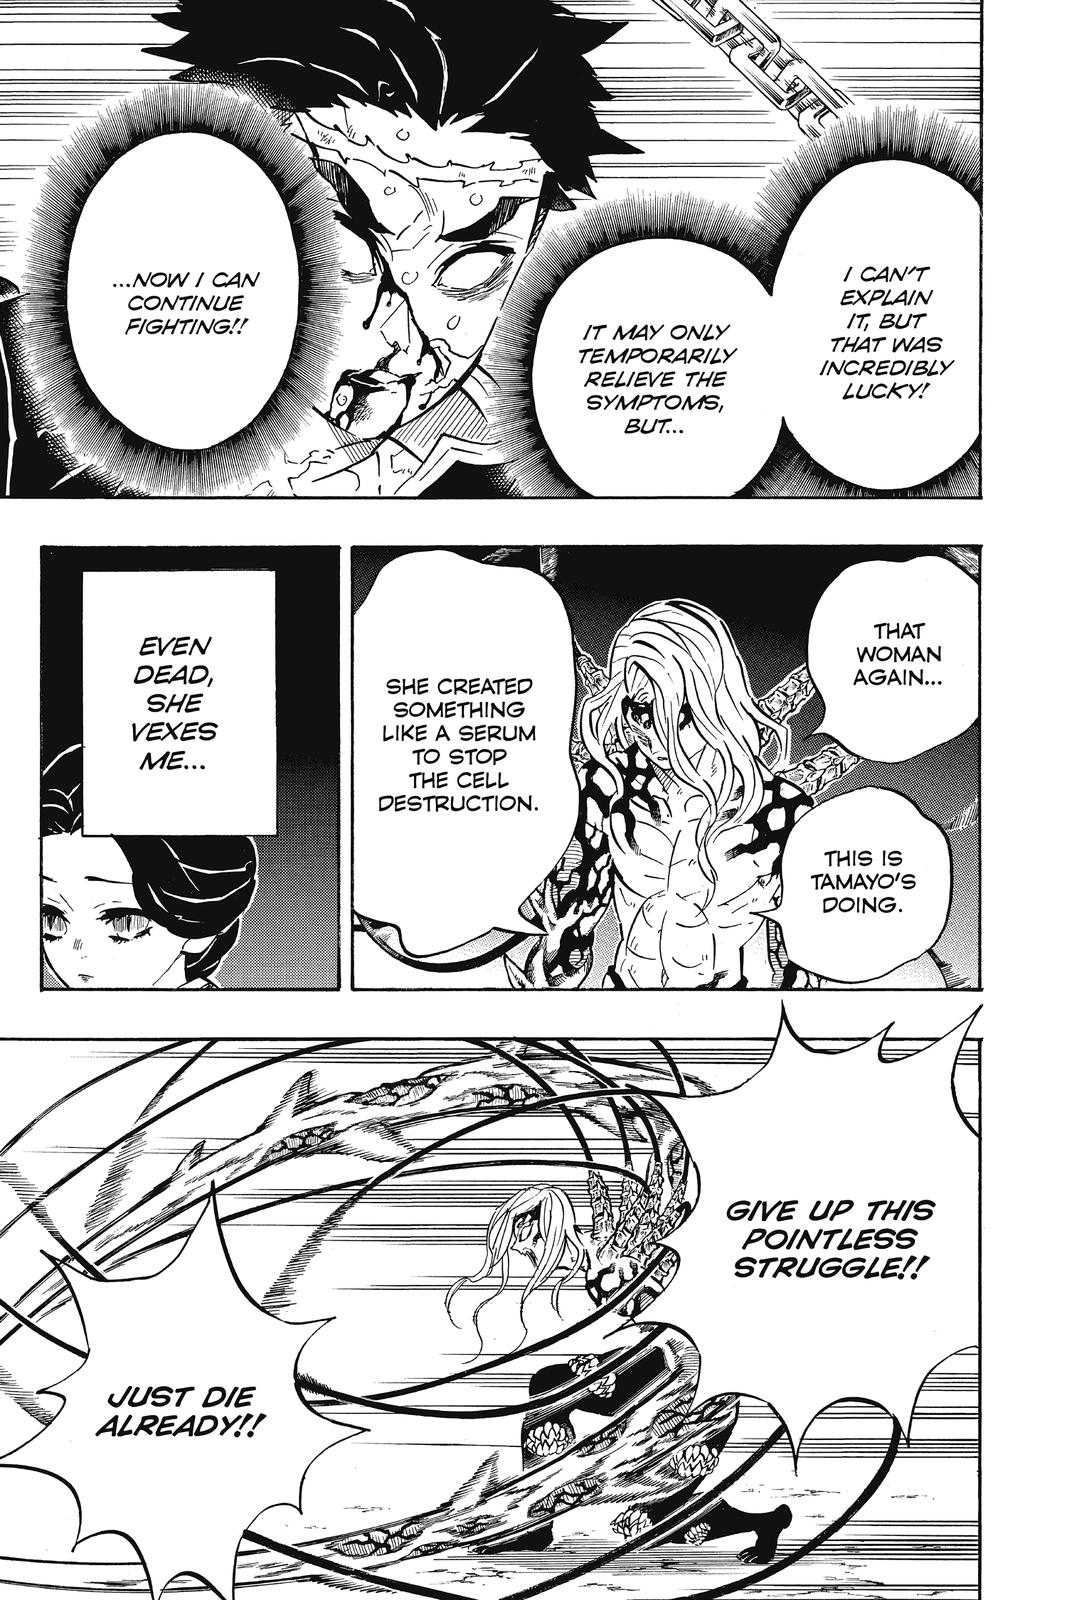 Demon Slayer Manga Manga Chapter - 189 - image 14